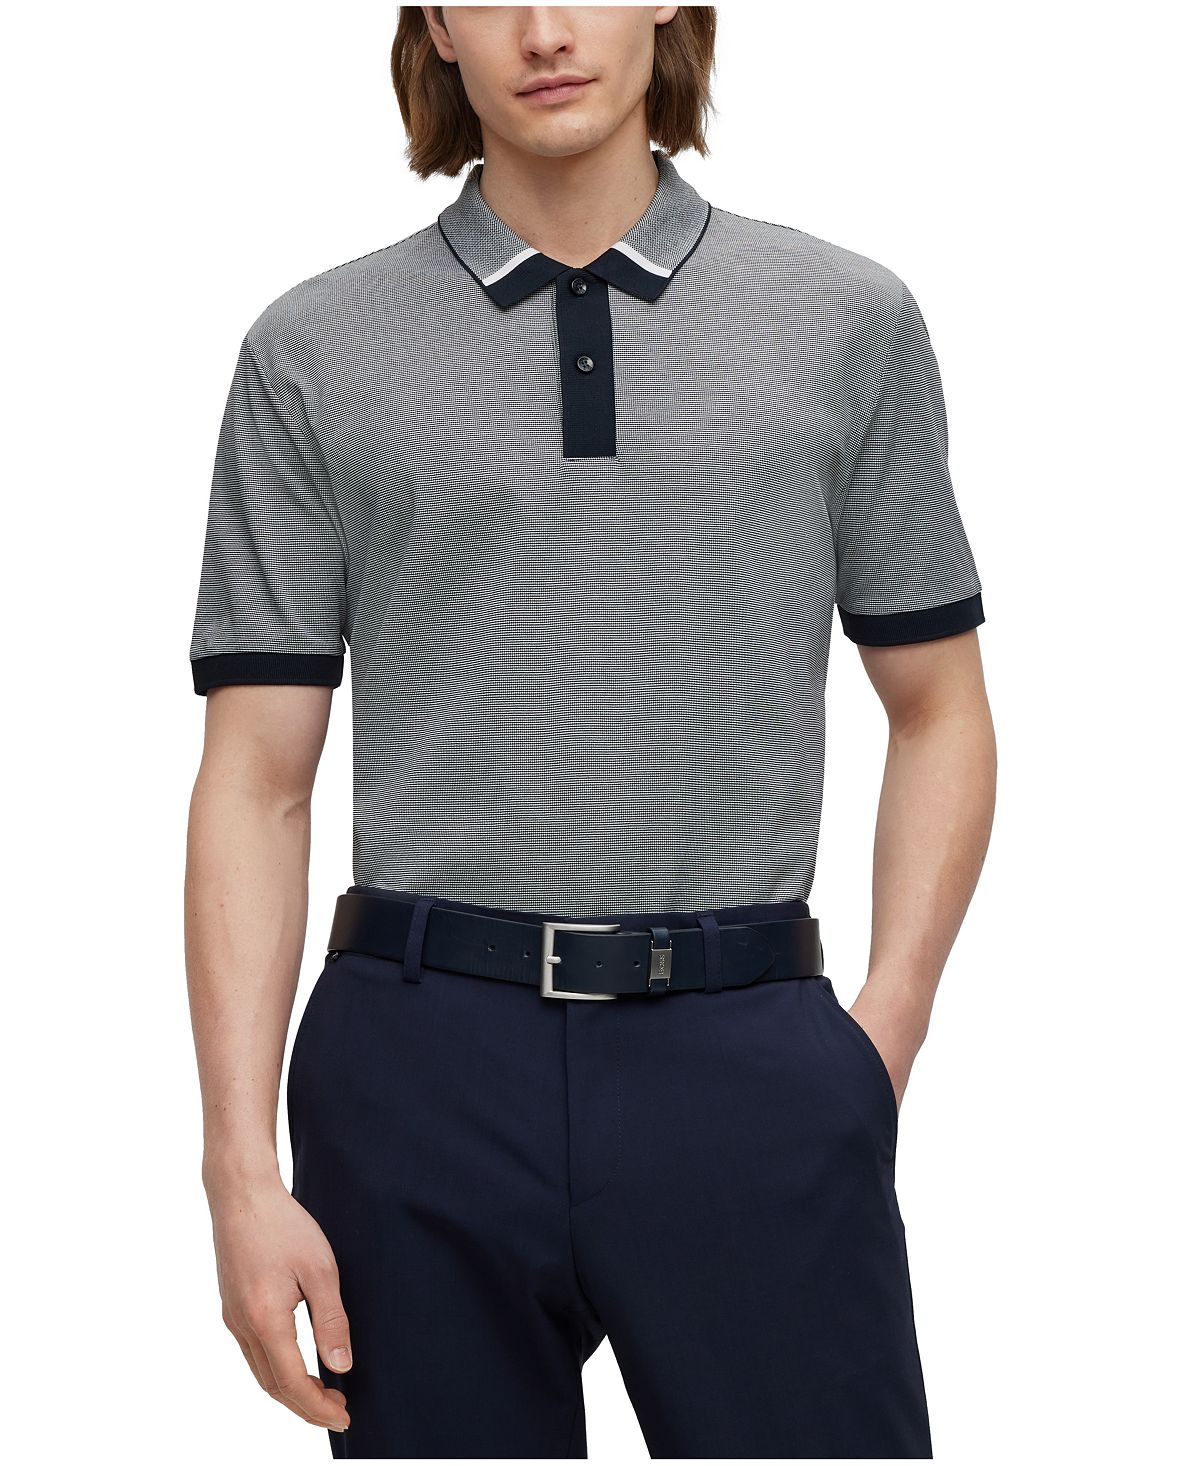 Мужская двухцветная рубашка-поло стандартного кроя Hugo Boss luca d altieri повседневная рубашка стандартного кроя из поплина из чистого хлопка голубой